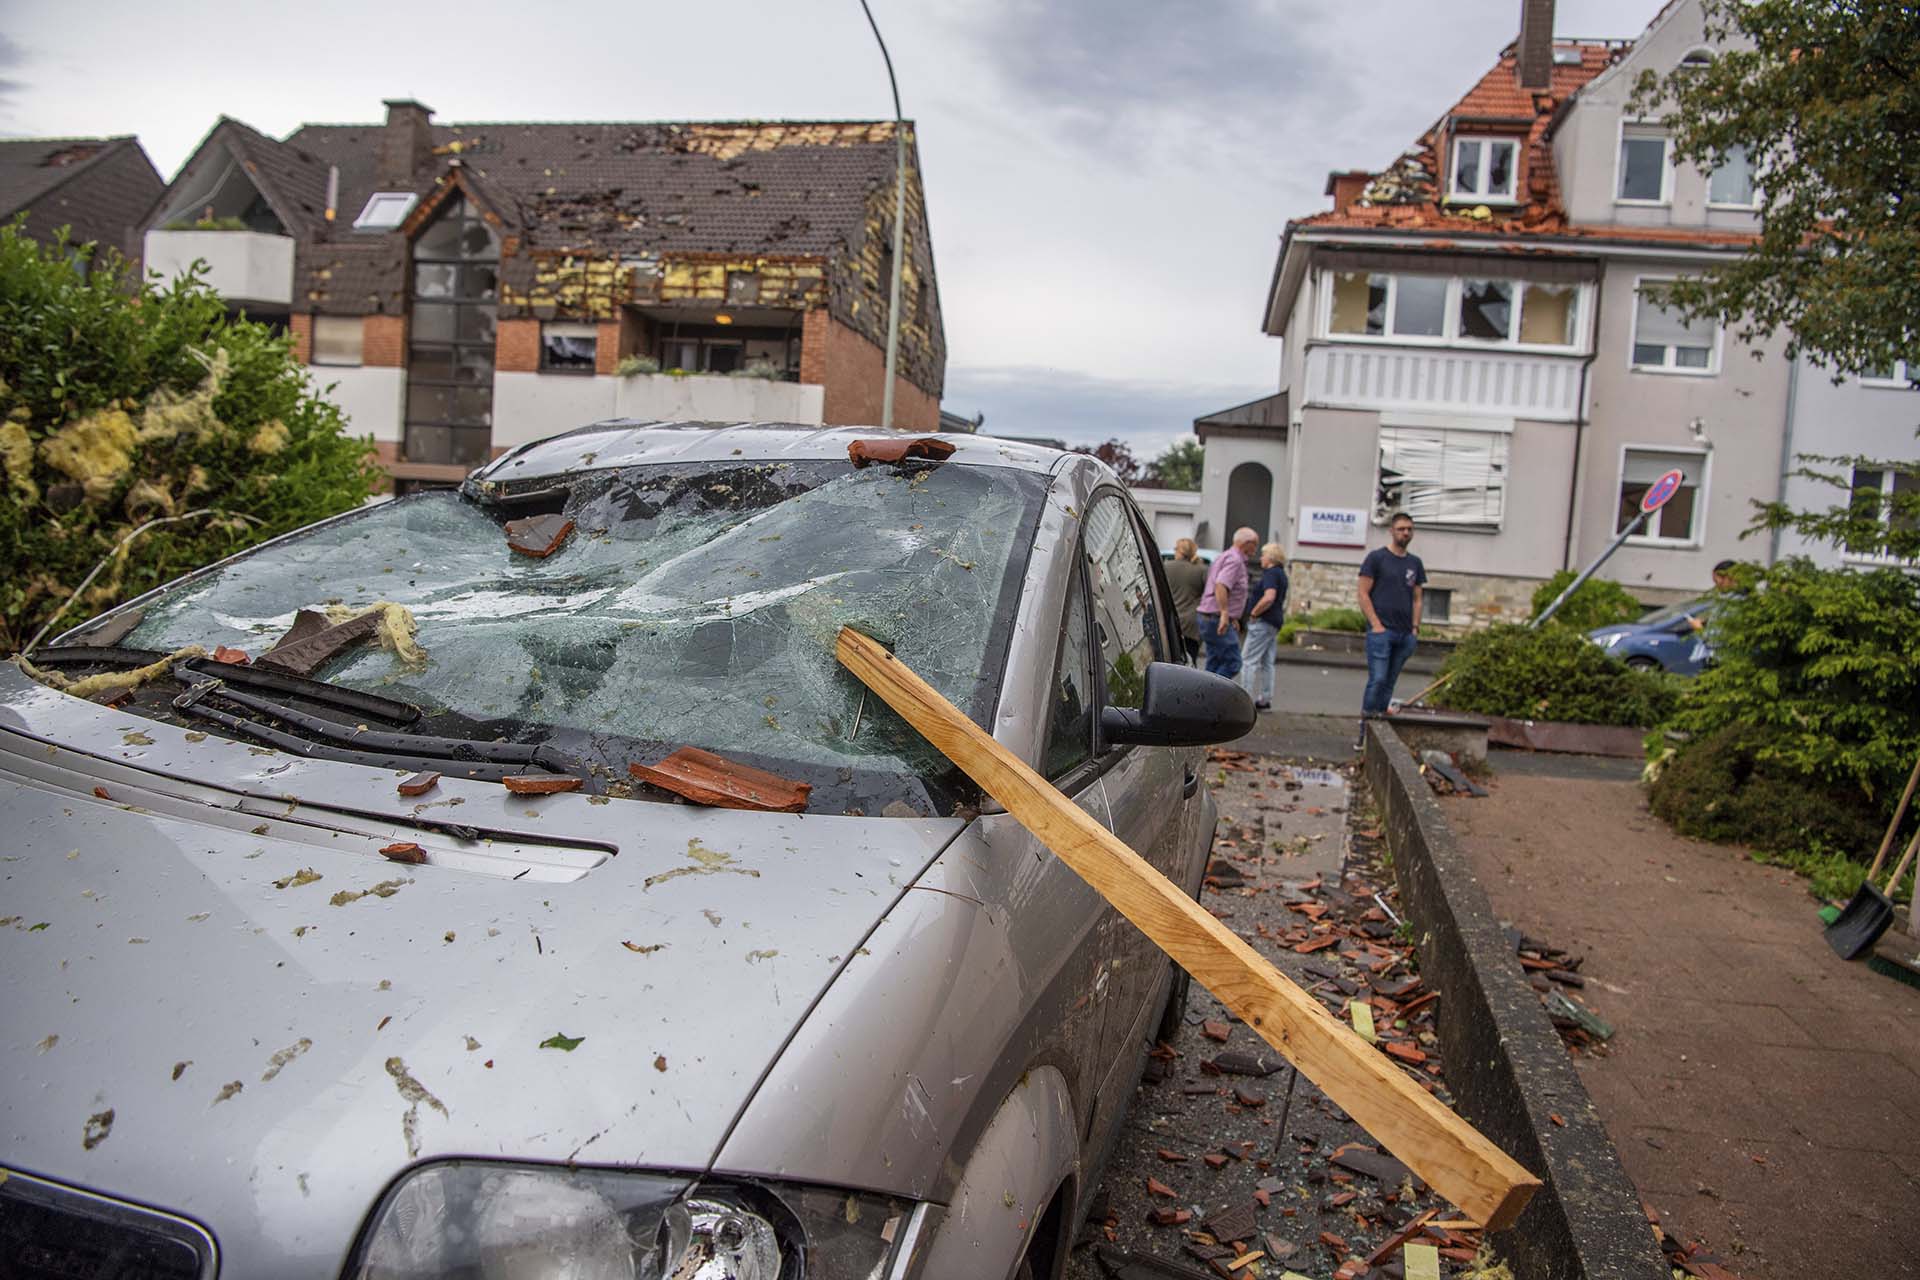 Un automóvil dañado tras el tornado en Paderborn, Alemania (Lino Mirgeler/dpa via AP)